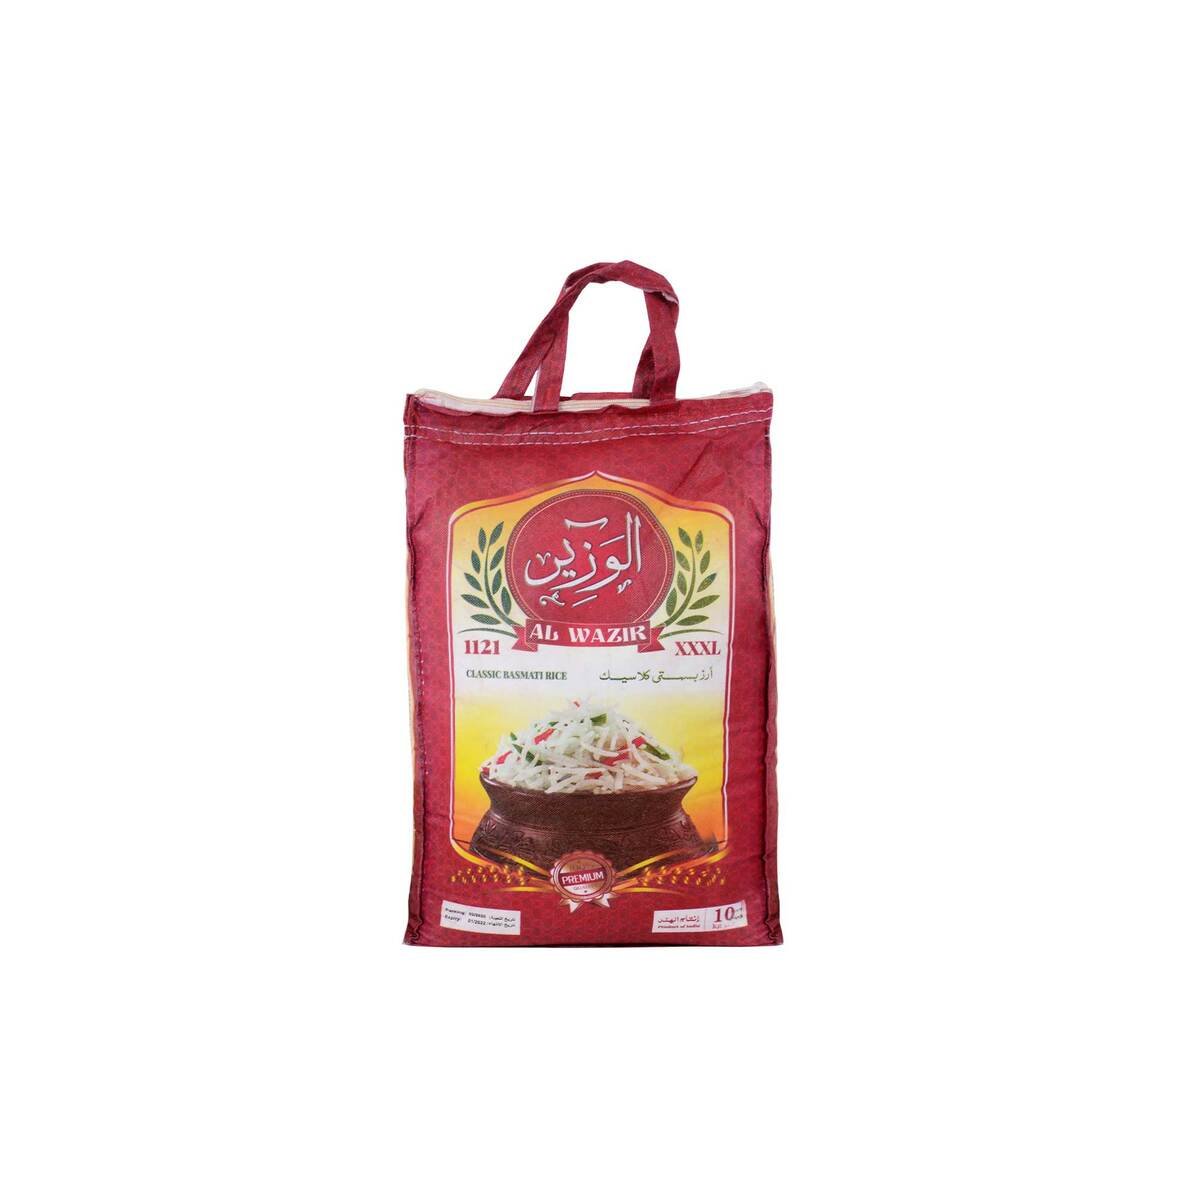 Al Wazir Classic Basmati Rice 1121 10kg